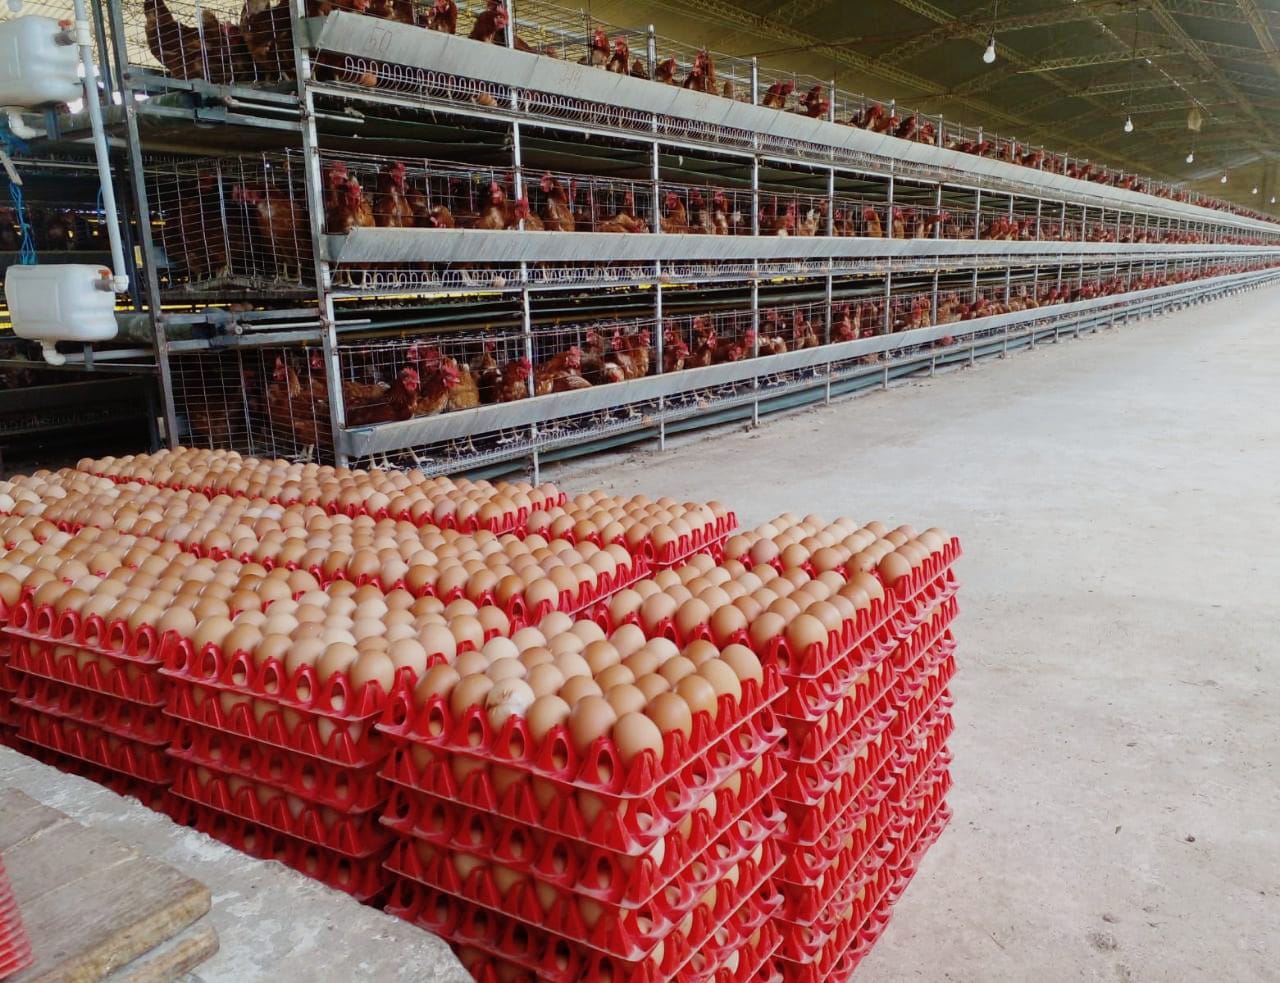 Avicultores de Santa Cruz: Pese a la gripe aviar, la provisión de huevo y carne de pollo está “plenamente garantizada” 